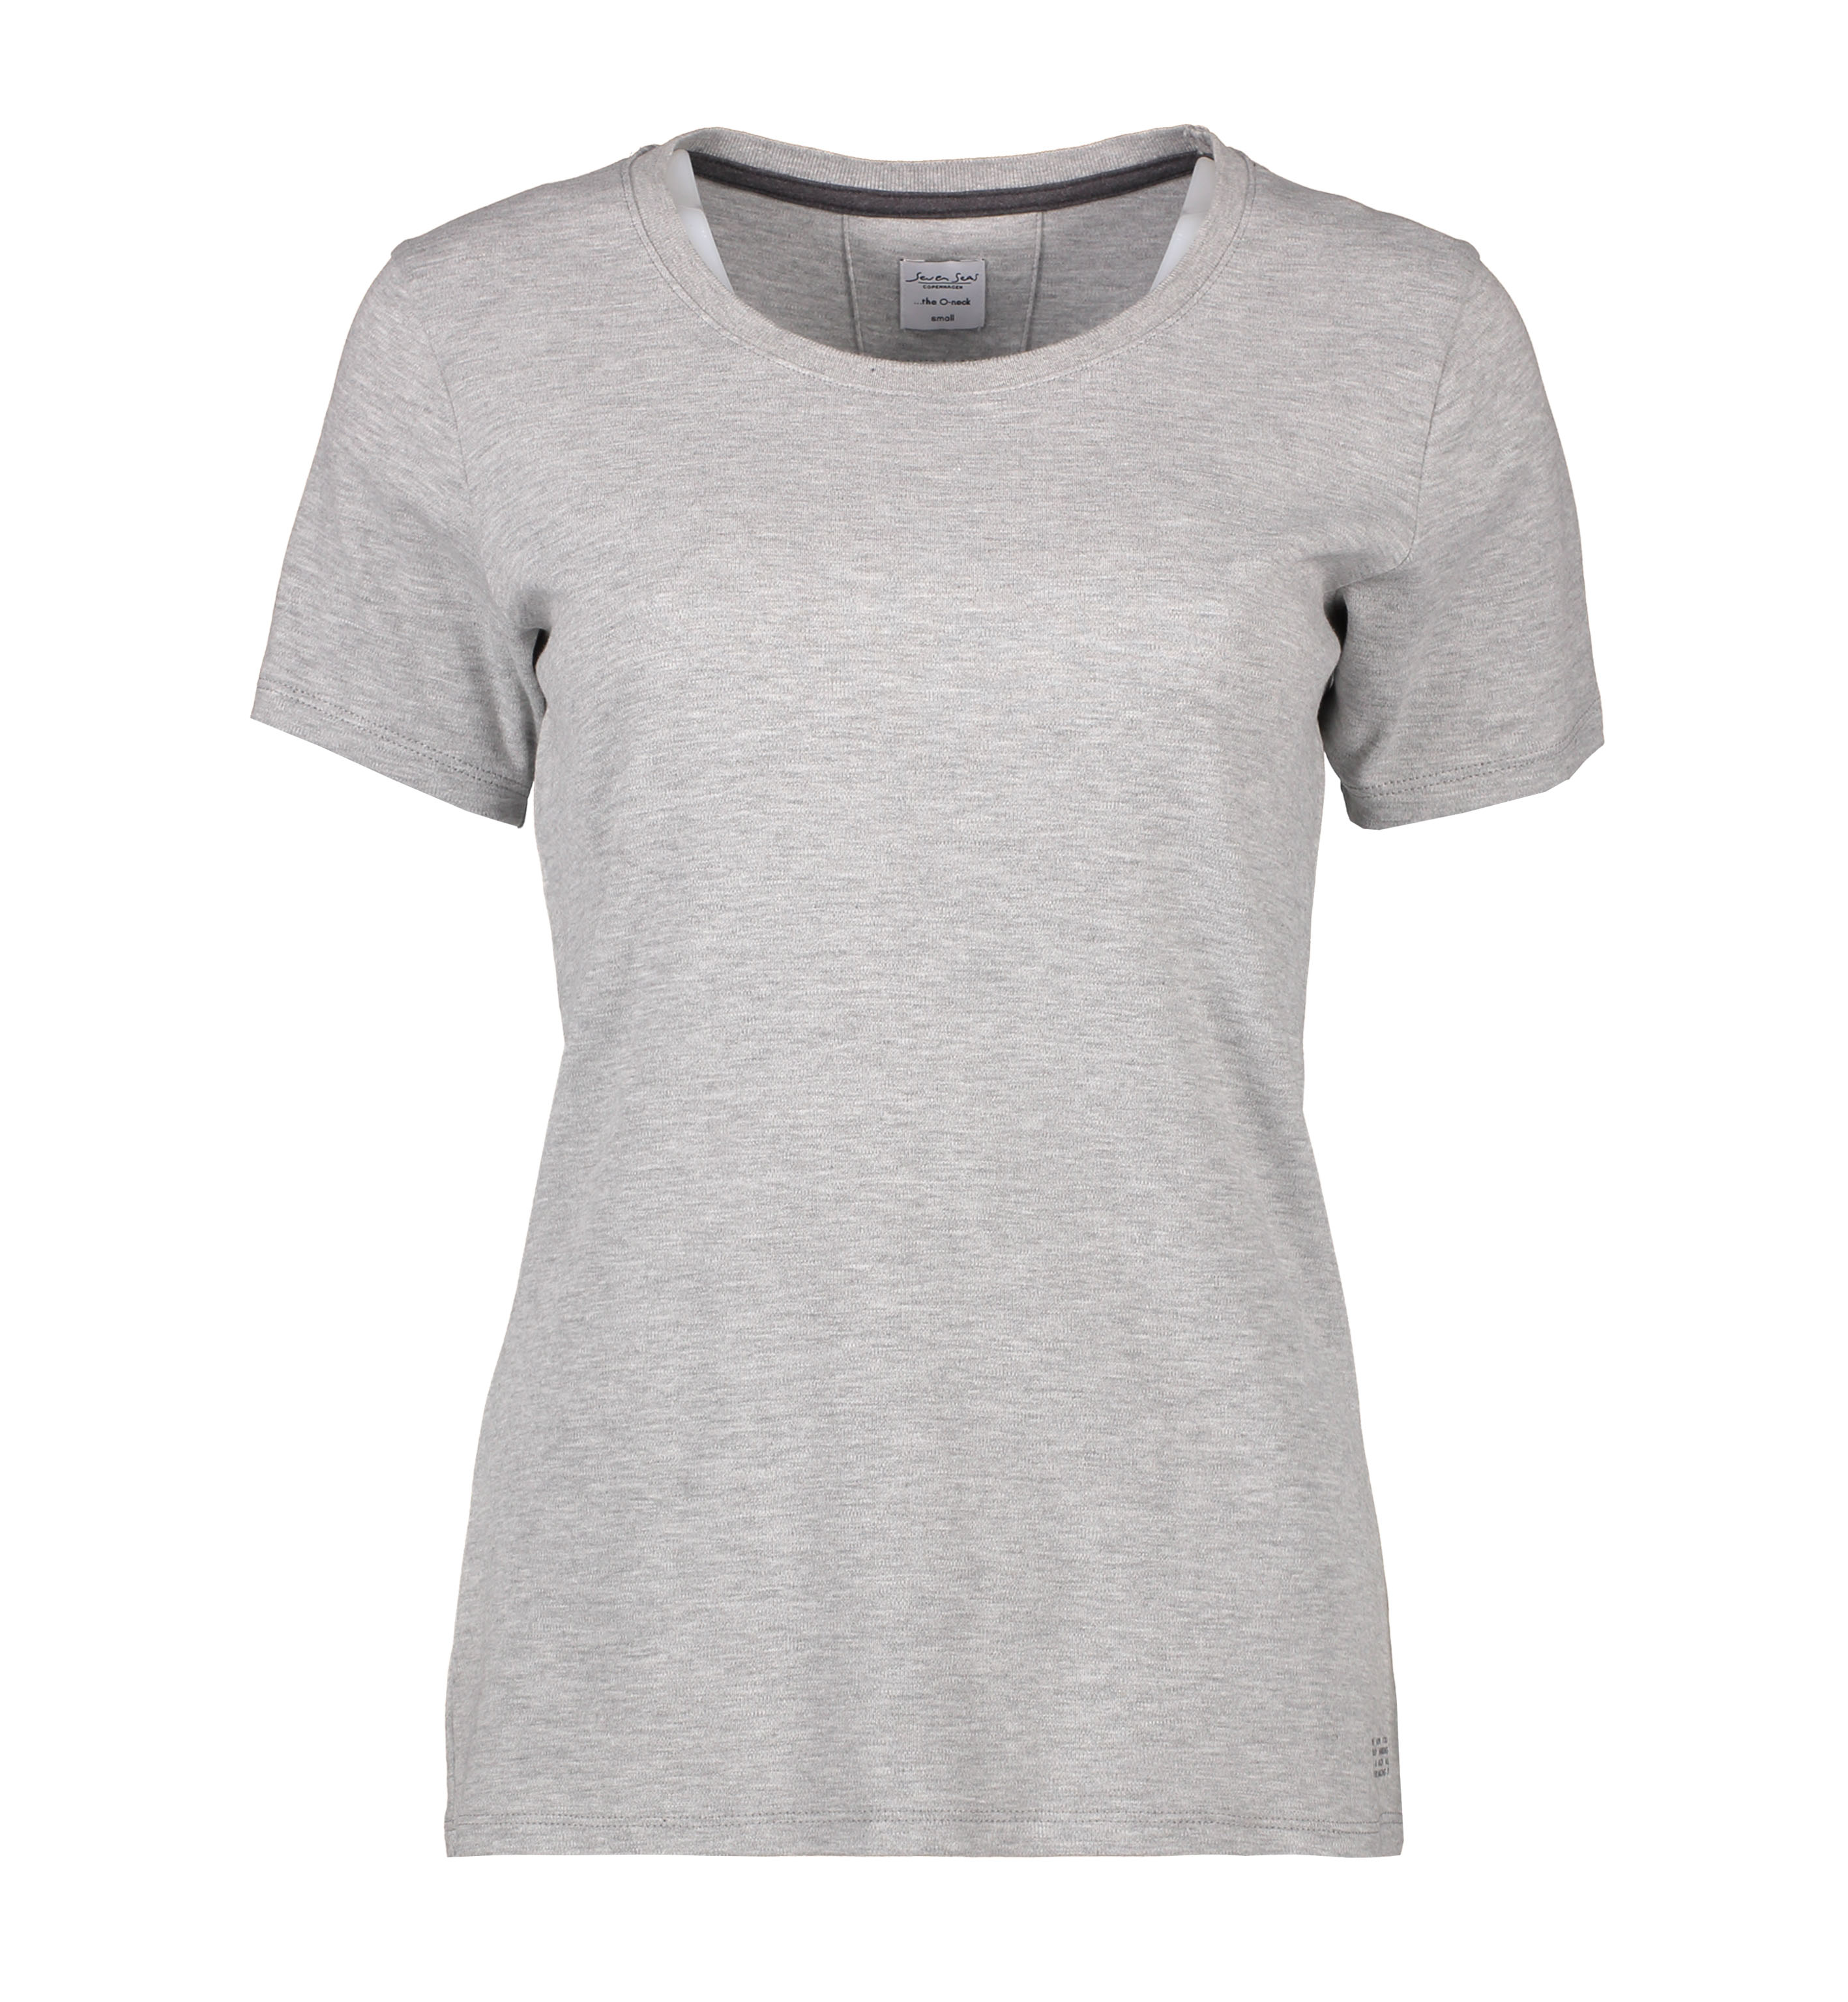 Damen T-Shirt Interlock 180 g/m² Seven Seas® Hellgrau meliert S